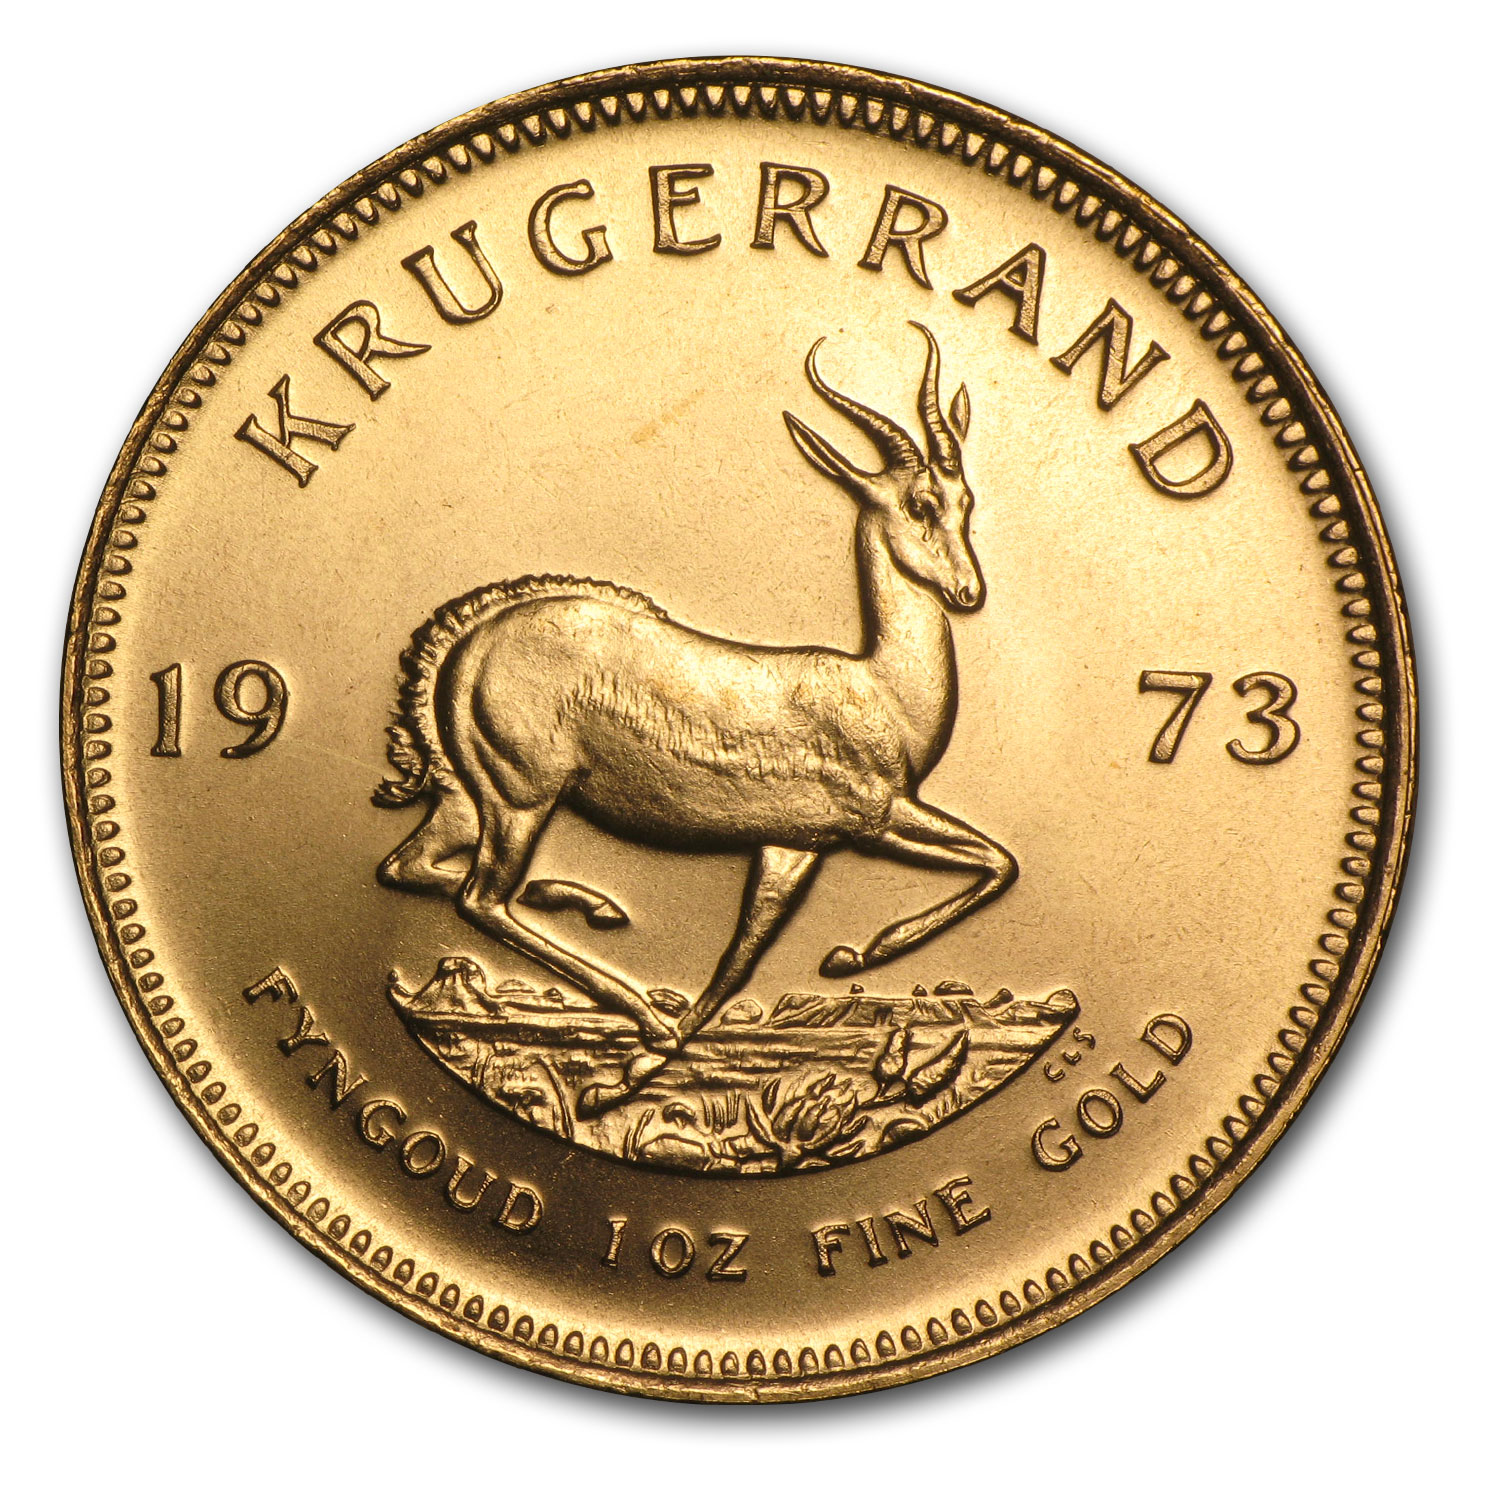 Buy 1973 South Africa 1 oz Gold Krugerrand BU